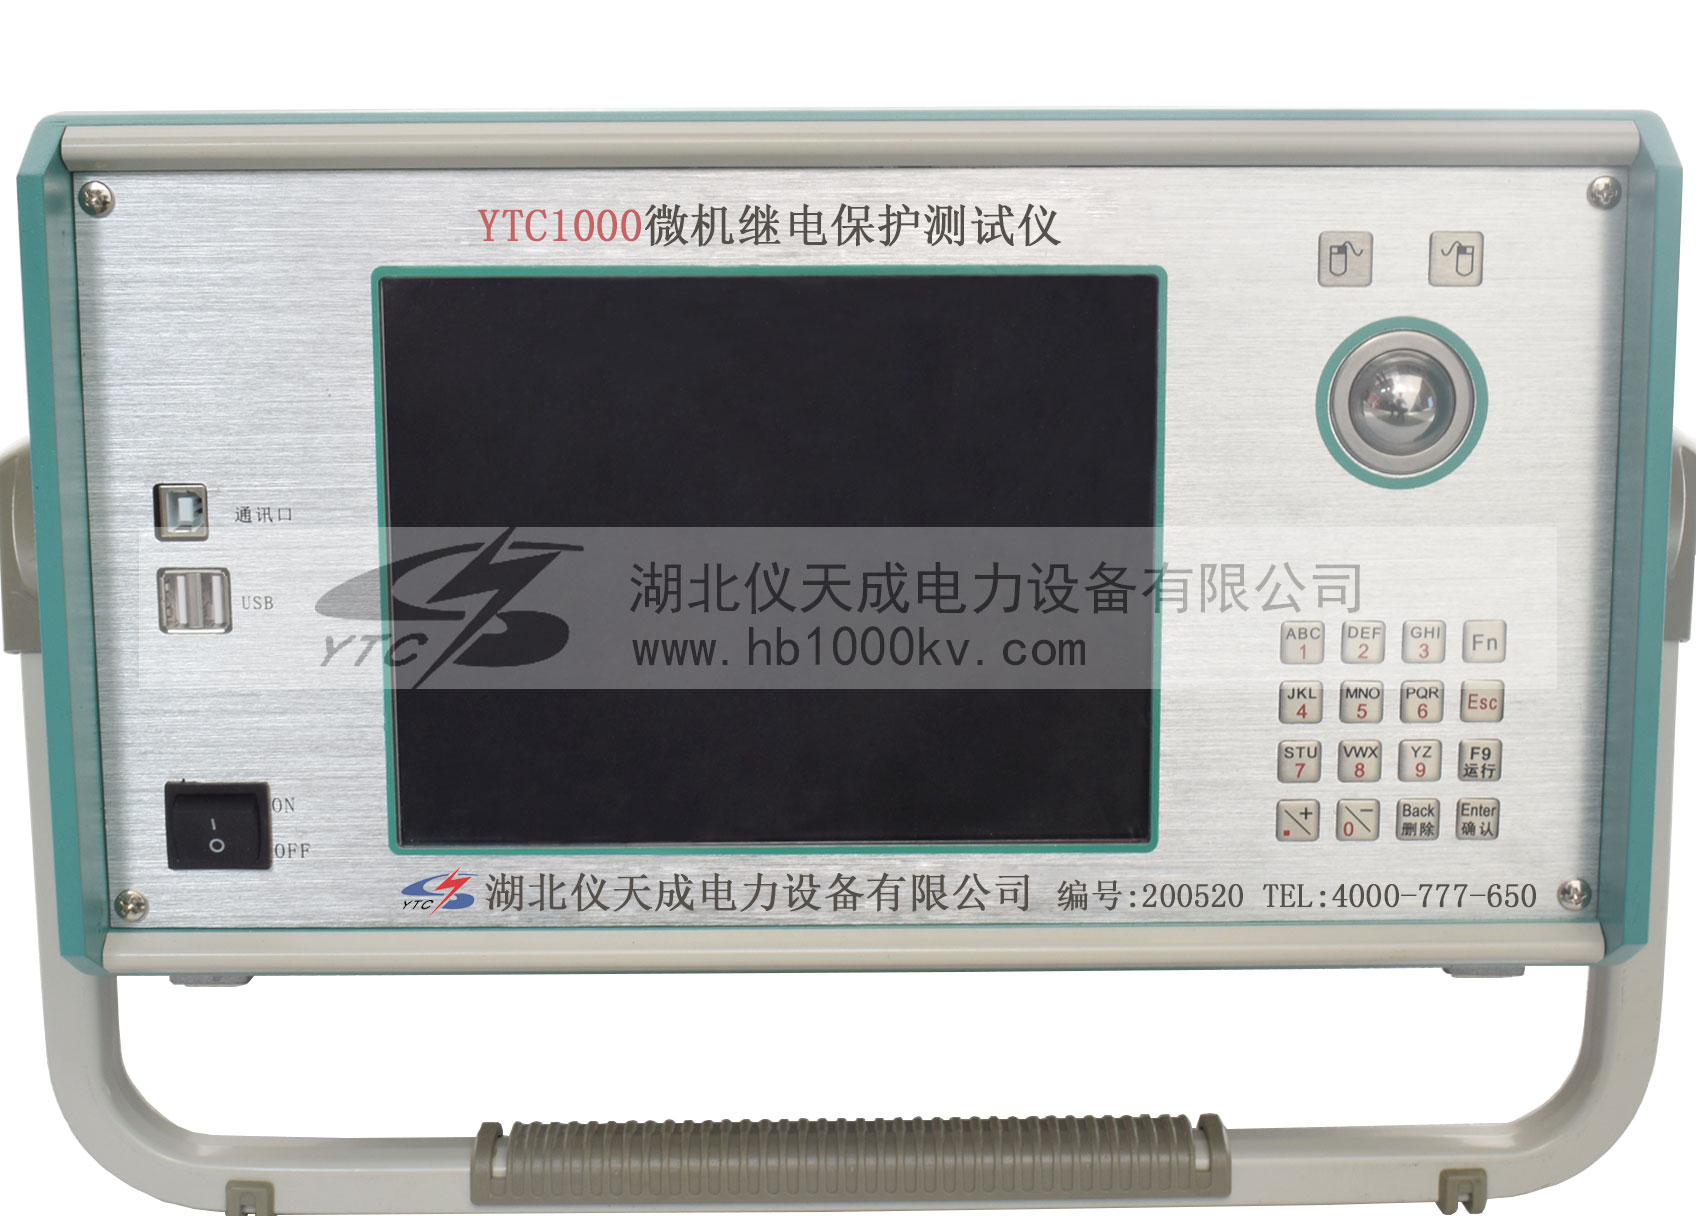 YTC1000微机继电保护测试仪控制面板